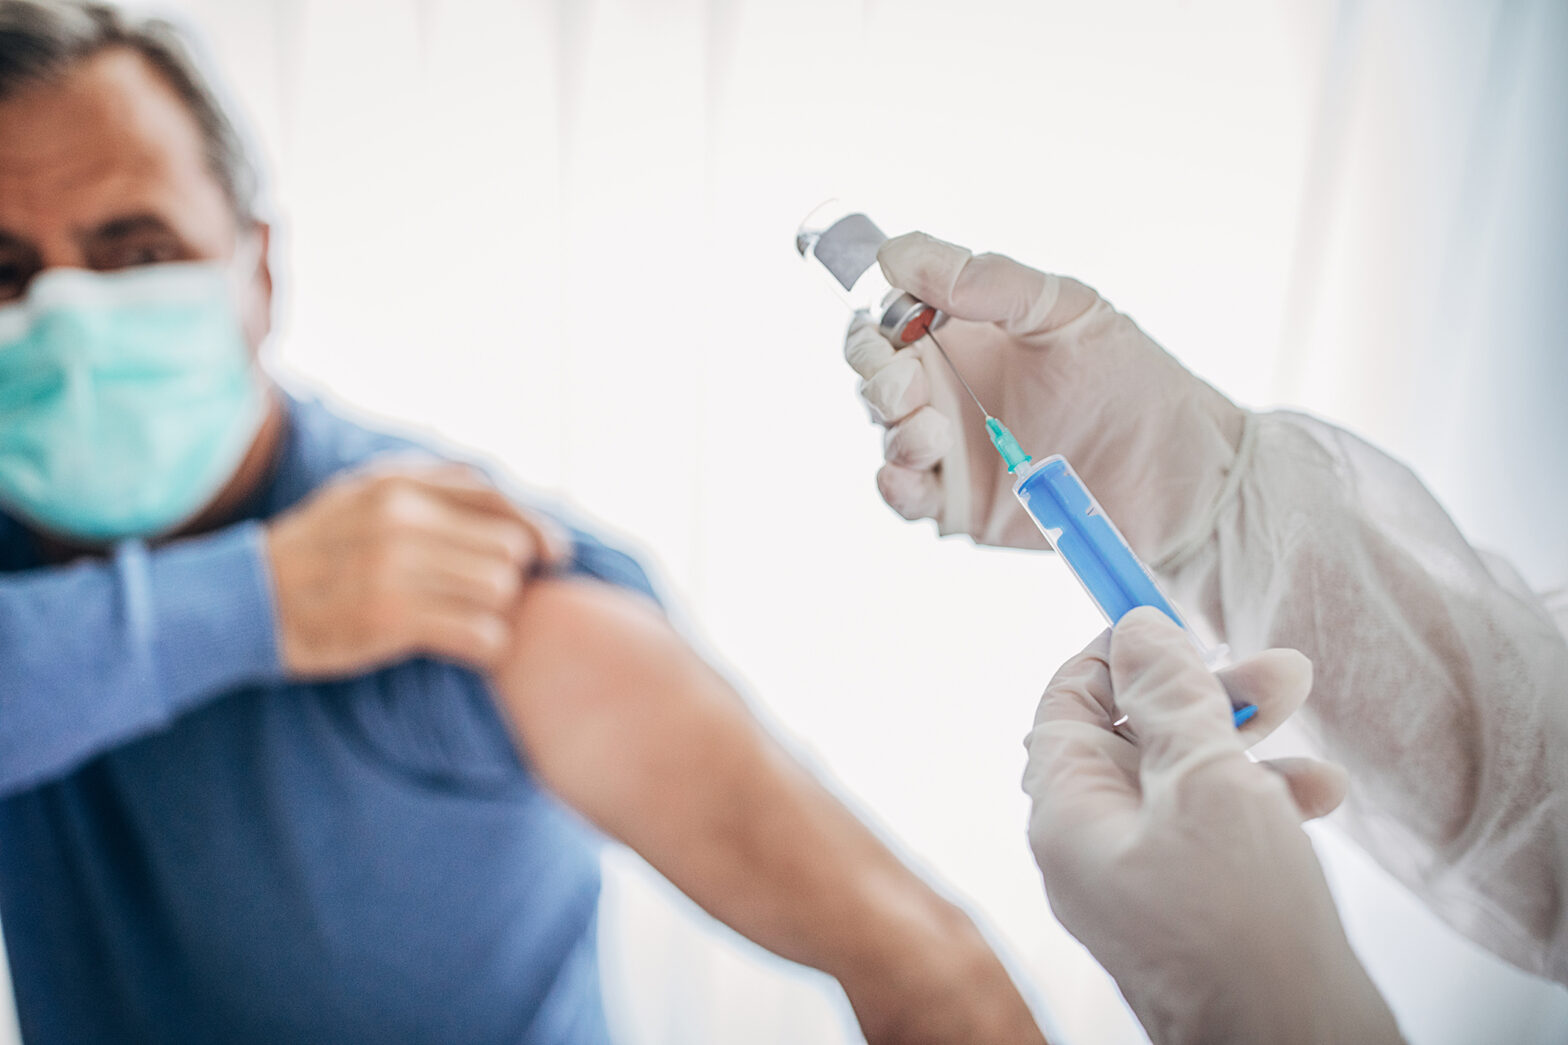 Age may rival politics in COVID-19 vaccine debate